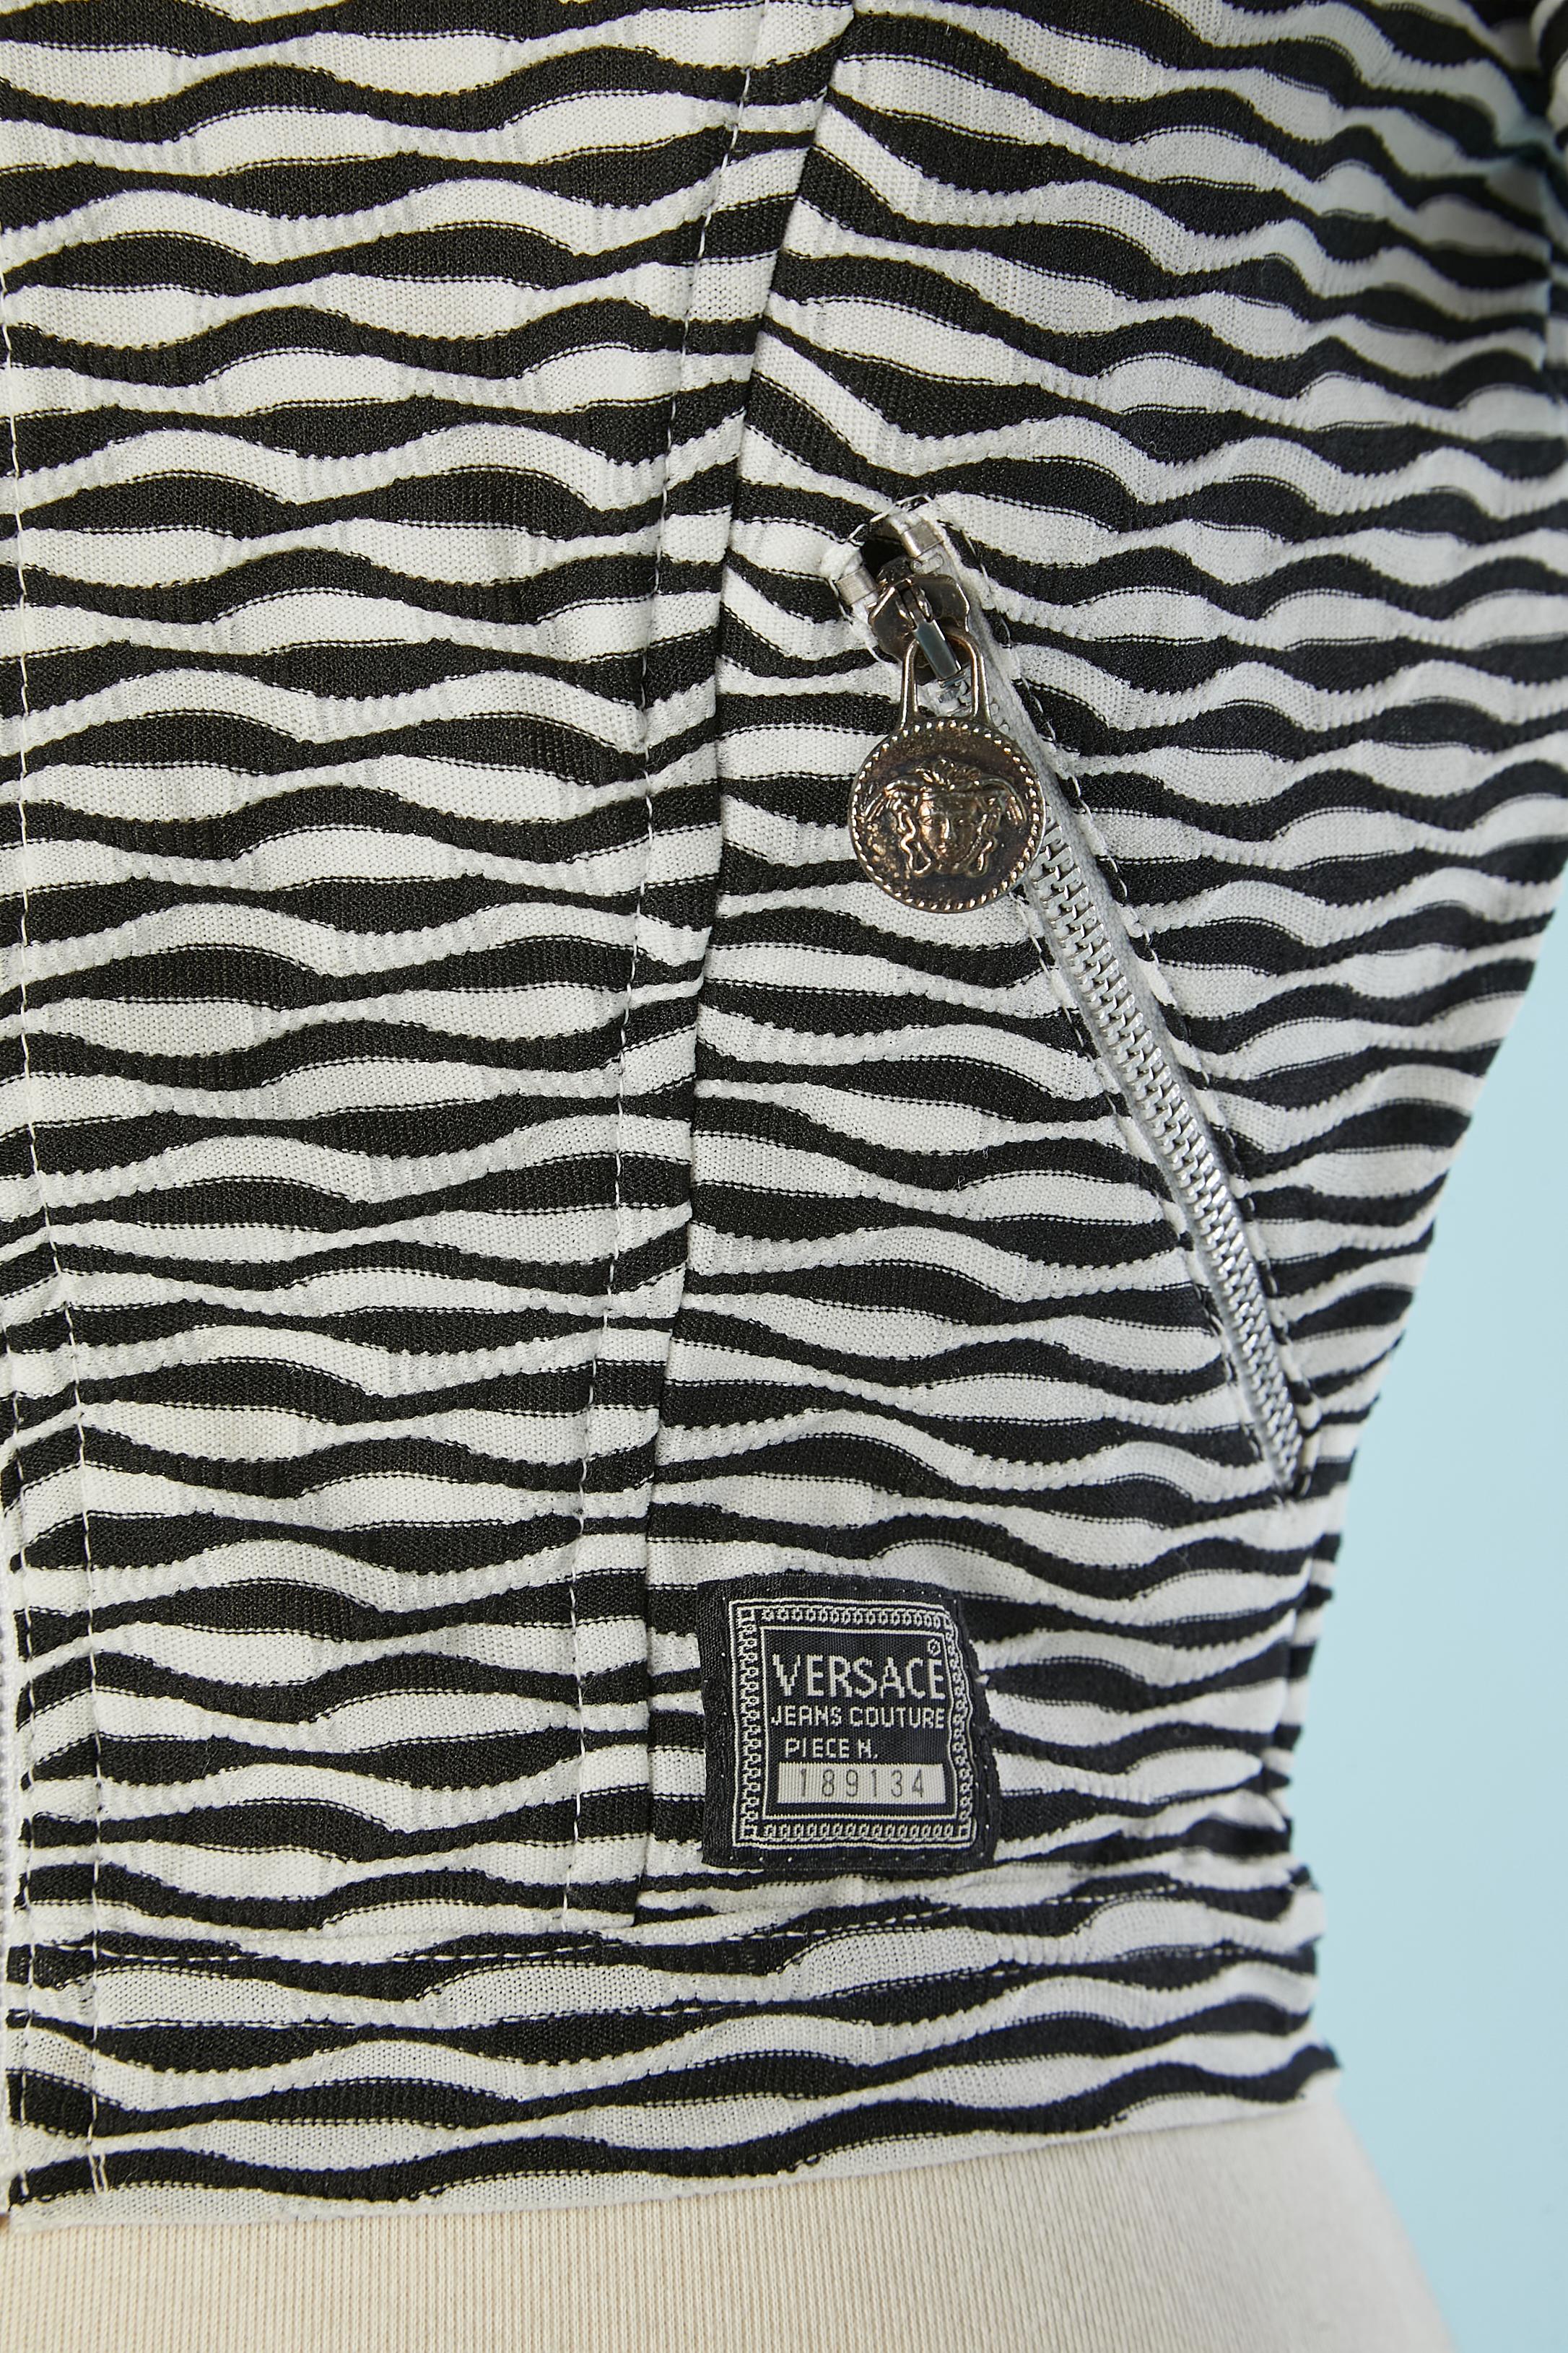 Cardigan en jacquard noir et blanc avec zip et Medusa sur la tirette du zip et sur le zip des poches. Numéroté : 189134
 Composition du tissu : 100% polyester
TAILLE S